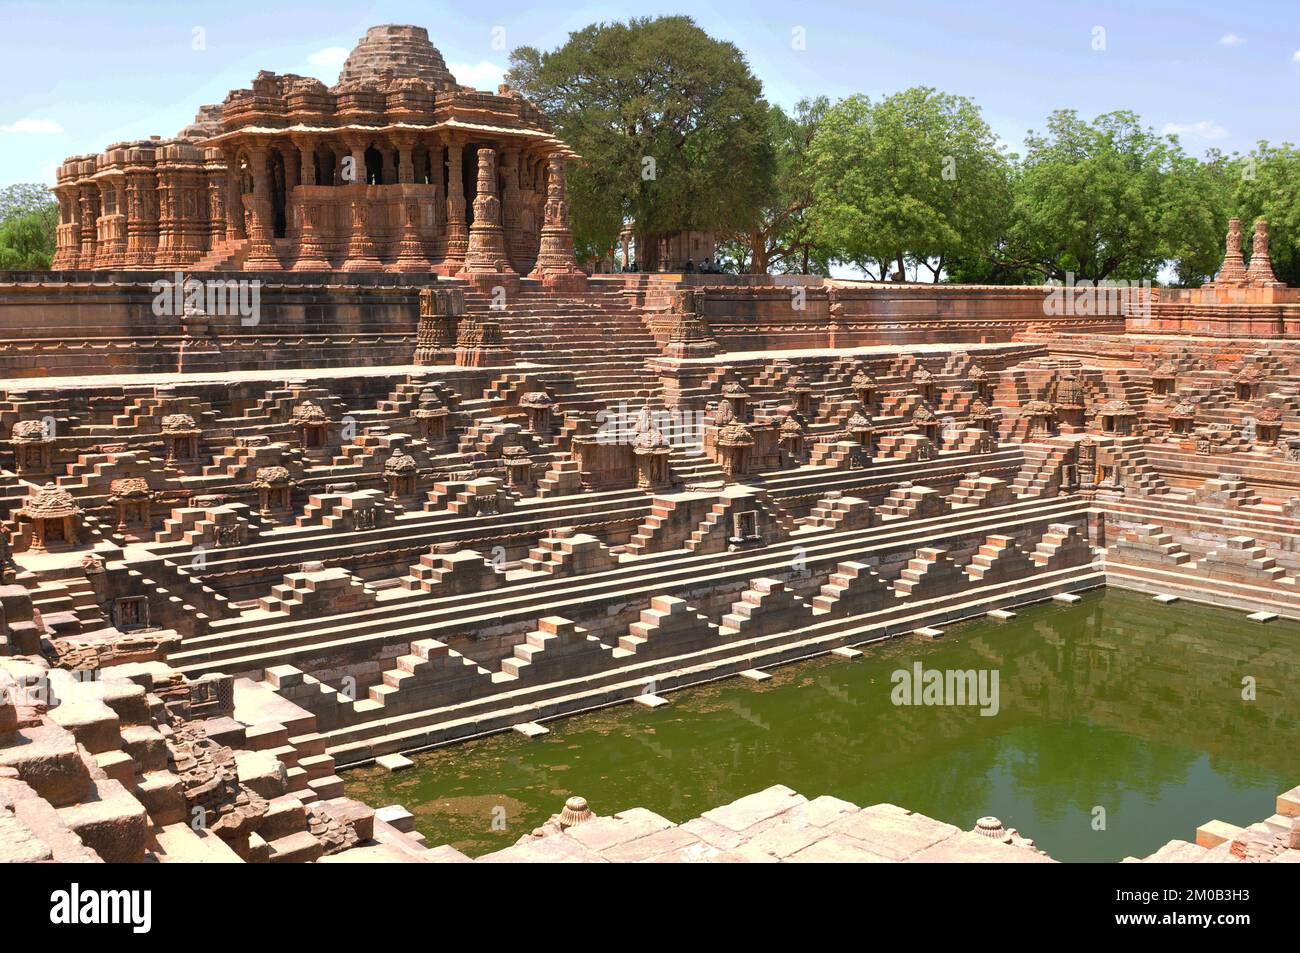 Il tempio del sole in arenaria a Modhera a Gujarat, India, costruito nel 1027 d.C. dal re Bhimdev Foto Stock